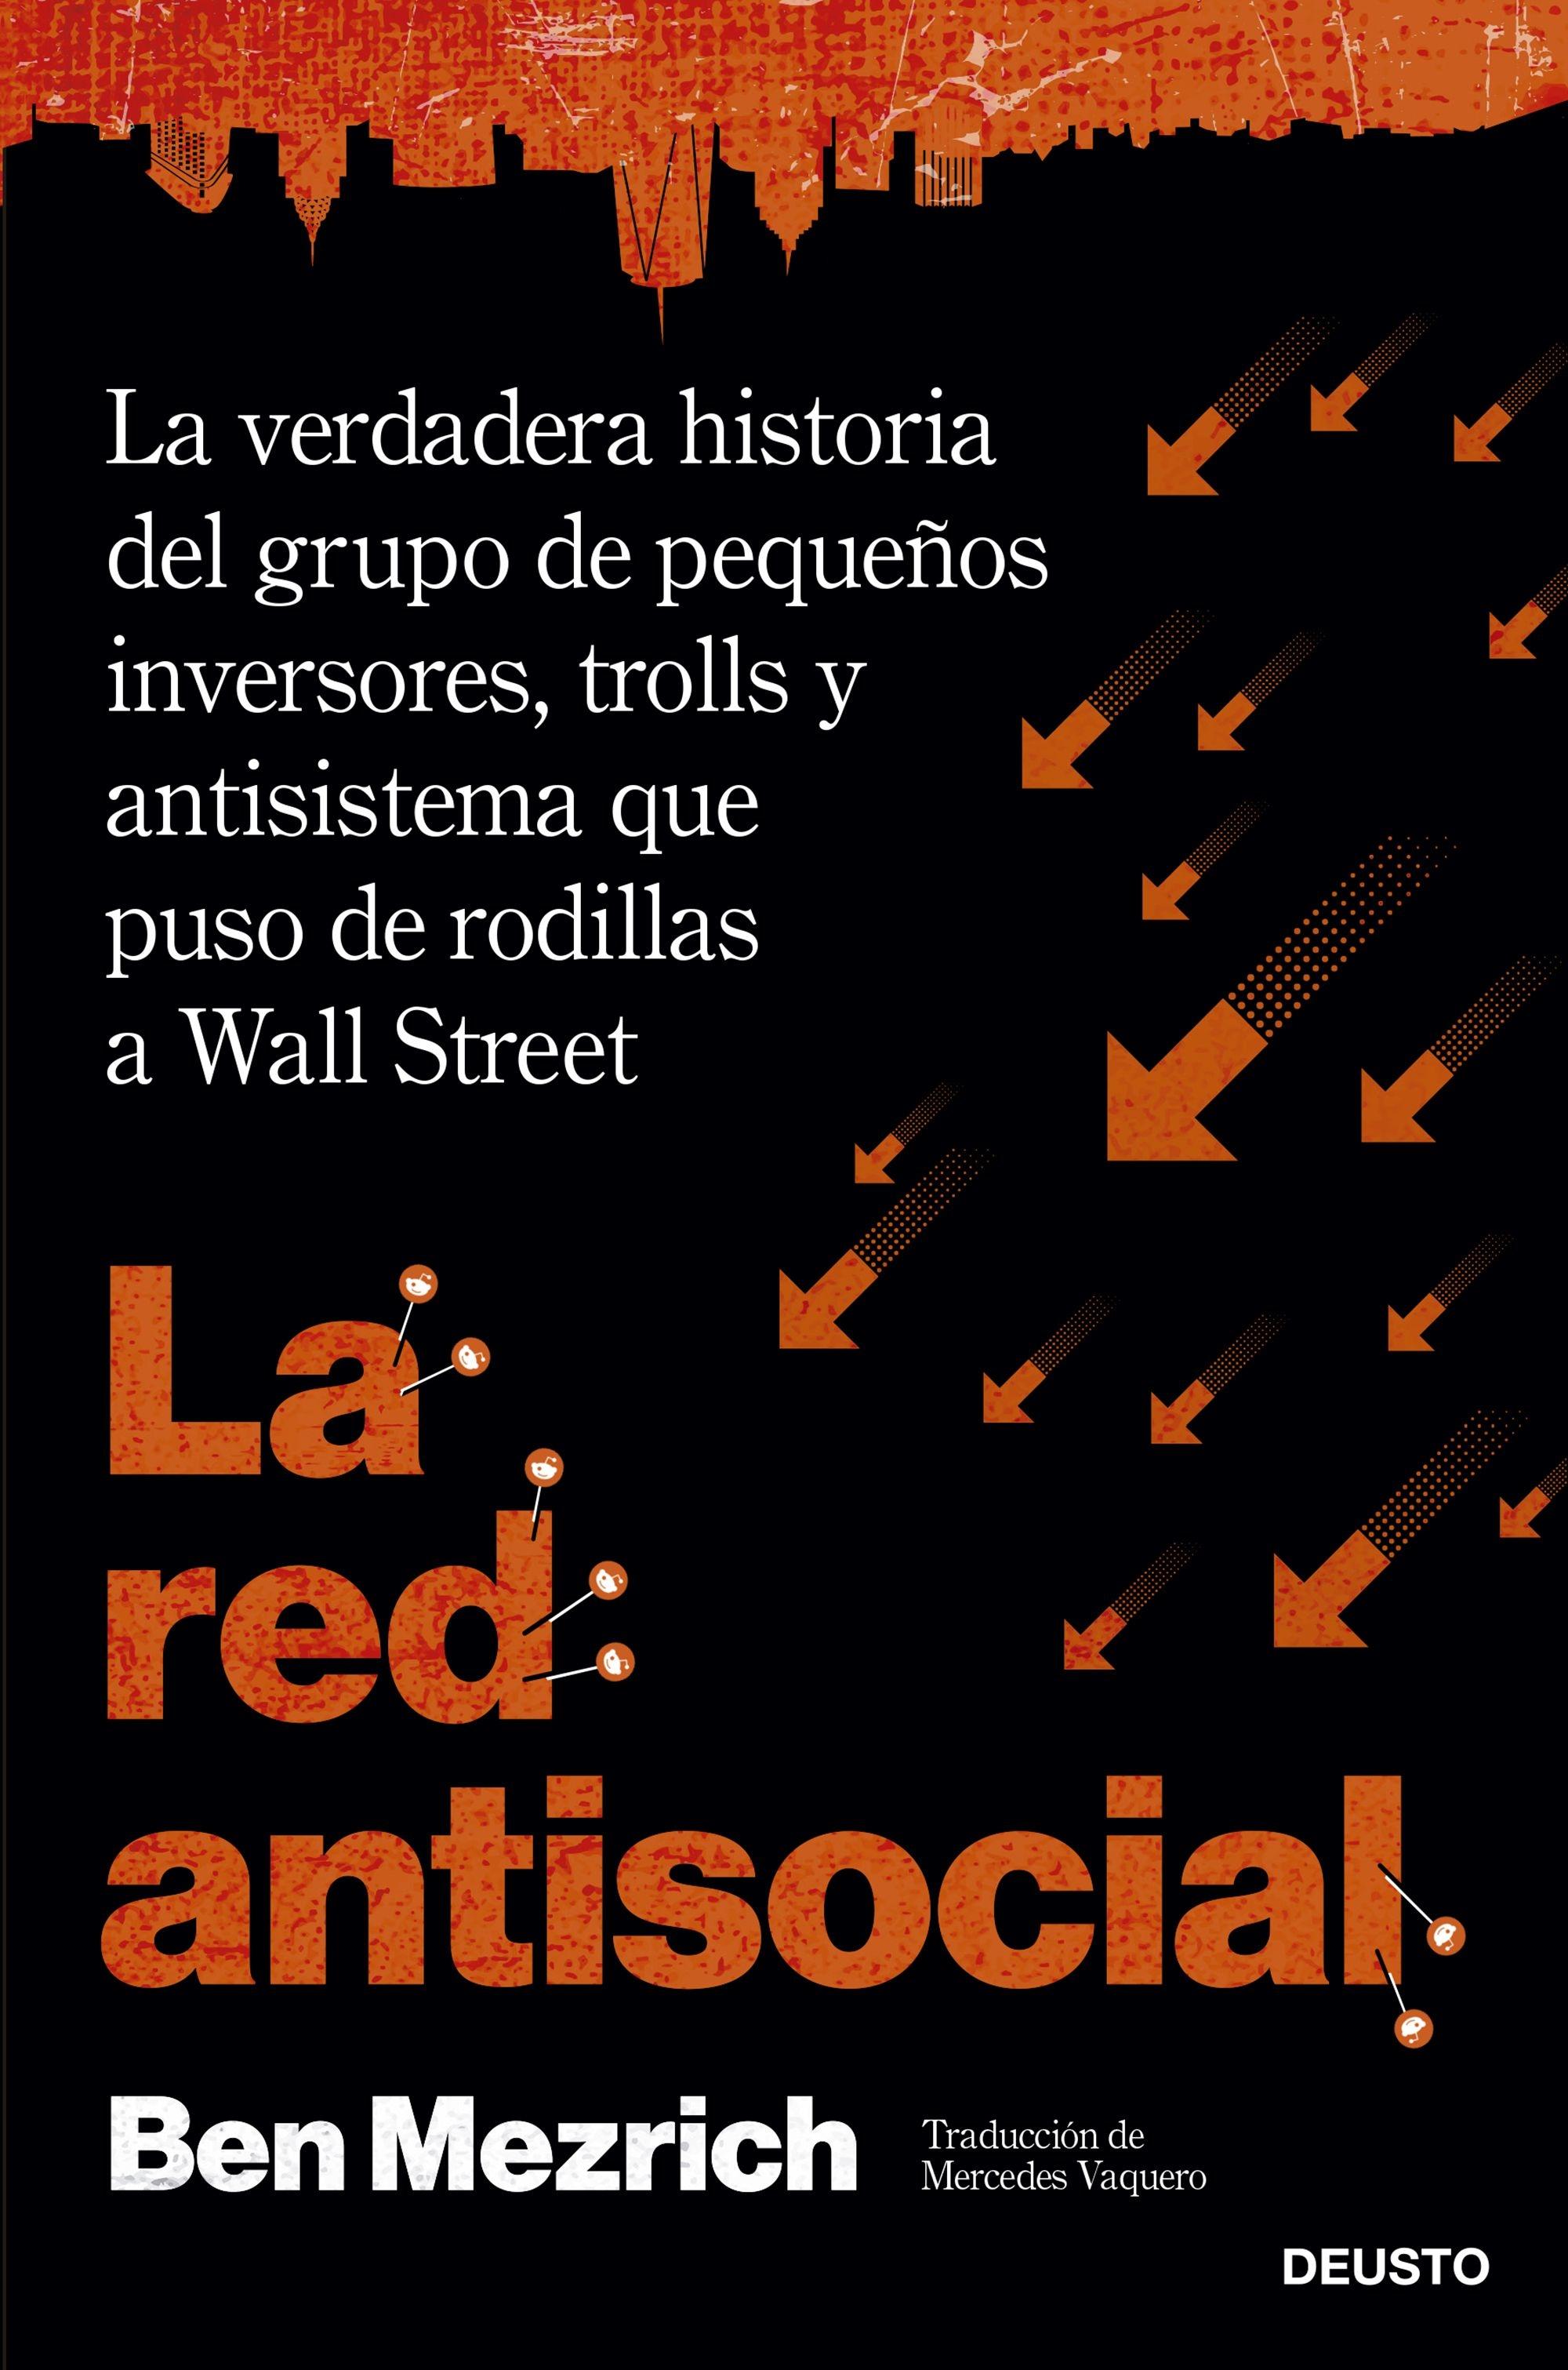 Red antisocial, La "La verdadera historia del grupo de pequeños inversores, trolls y antisis"